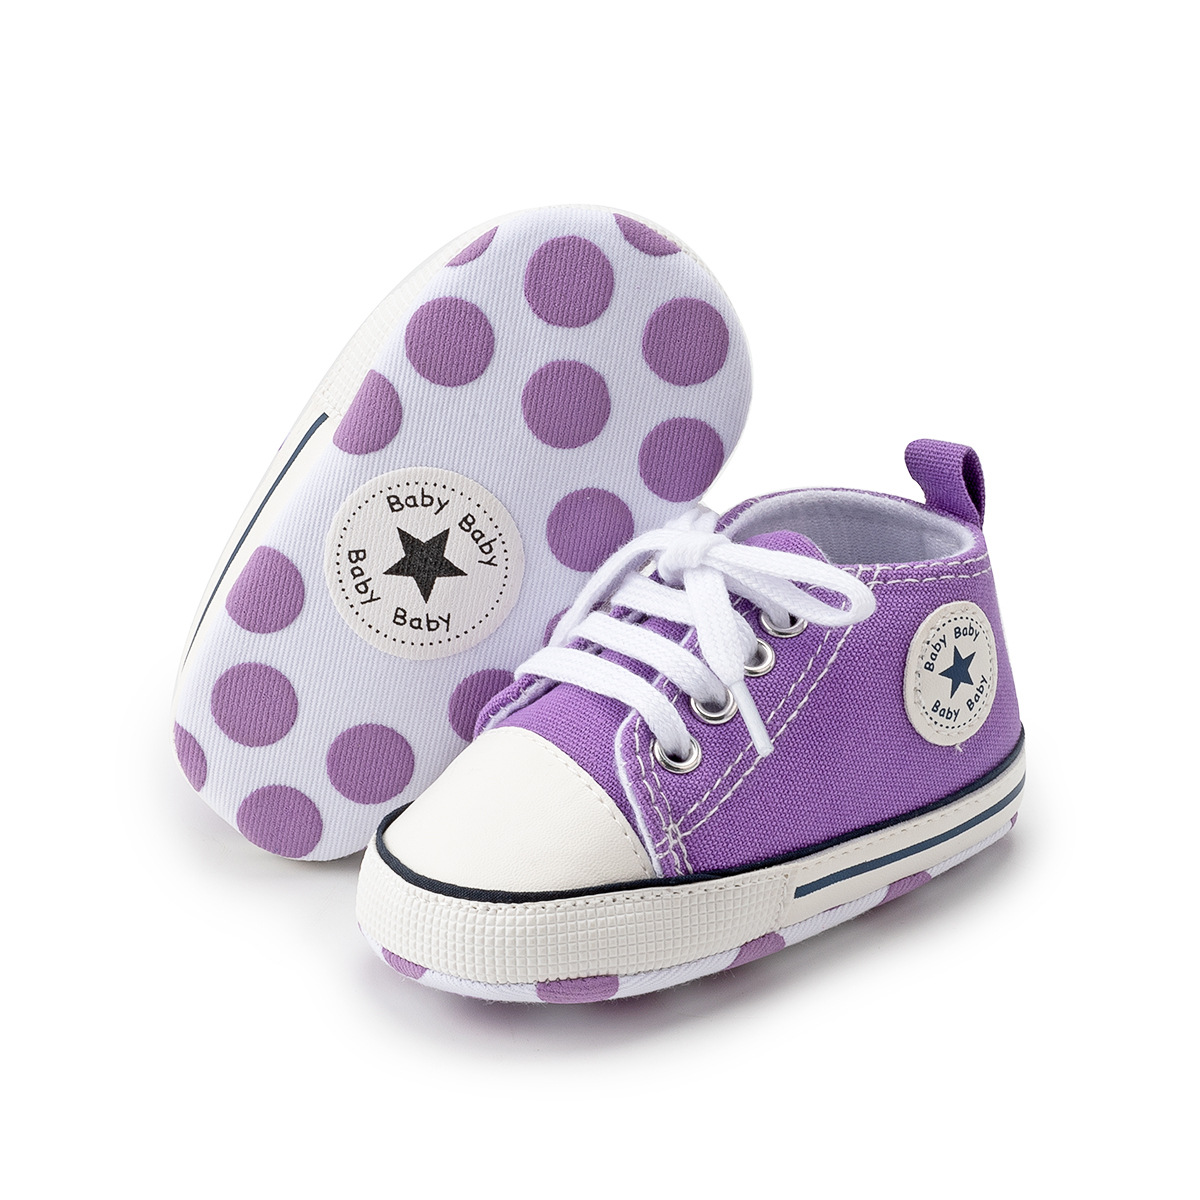 Chaussures bébé en Toile - Ref 3436764 Image 64